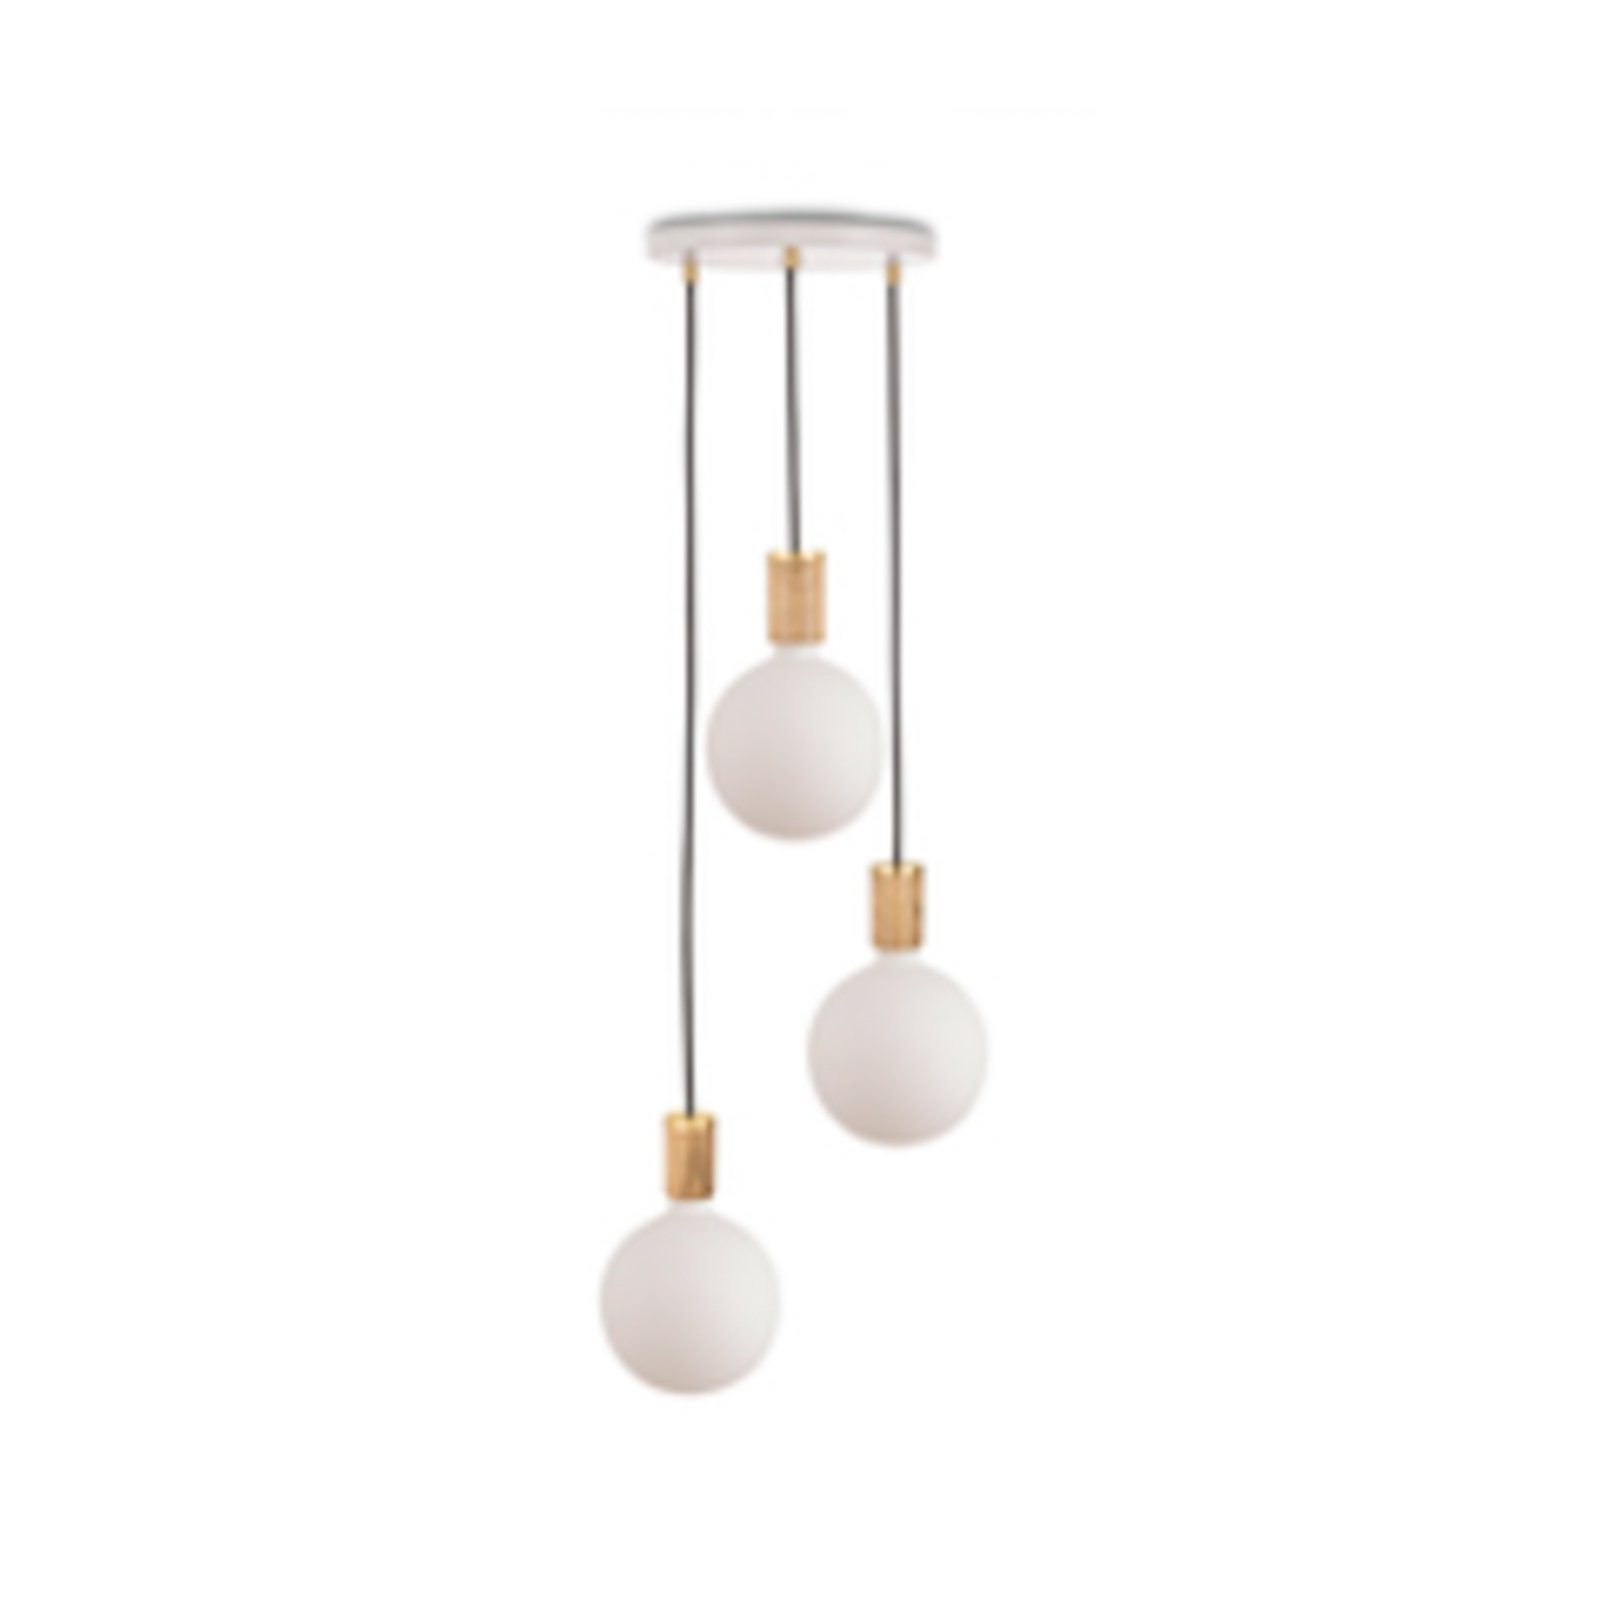 Tala hanglamp Triple Pendel rond, E27 opaal, wit/eikenhout